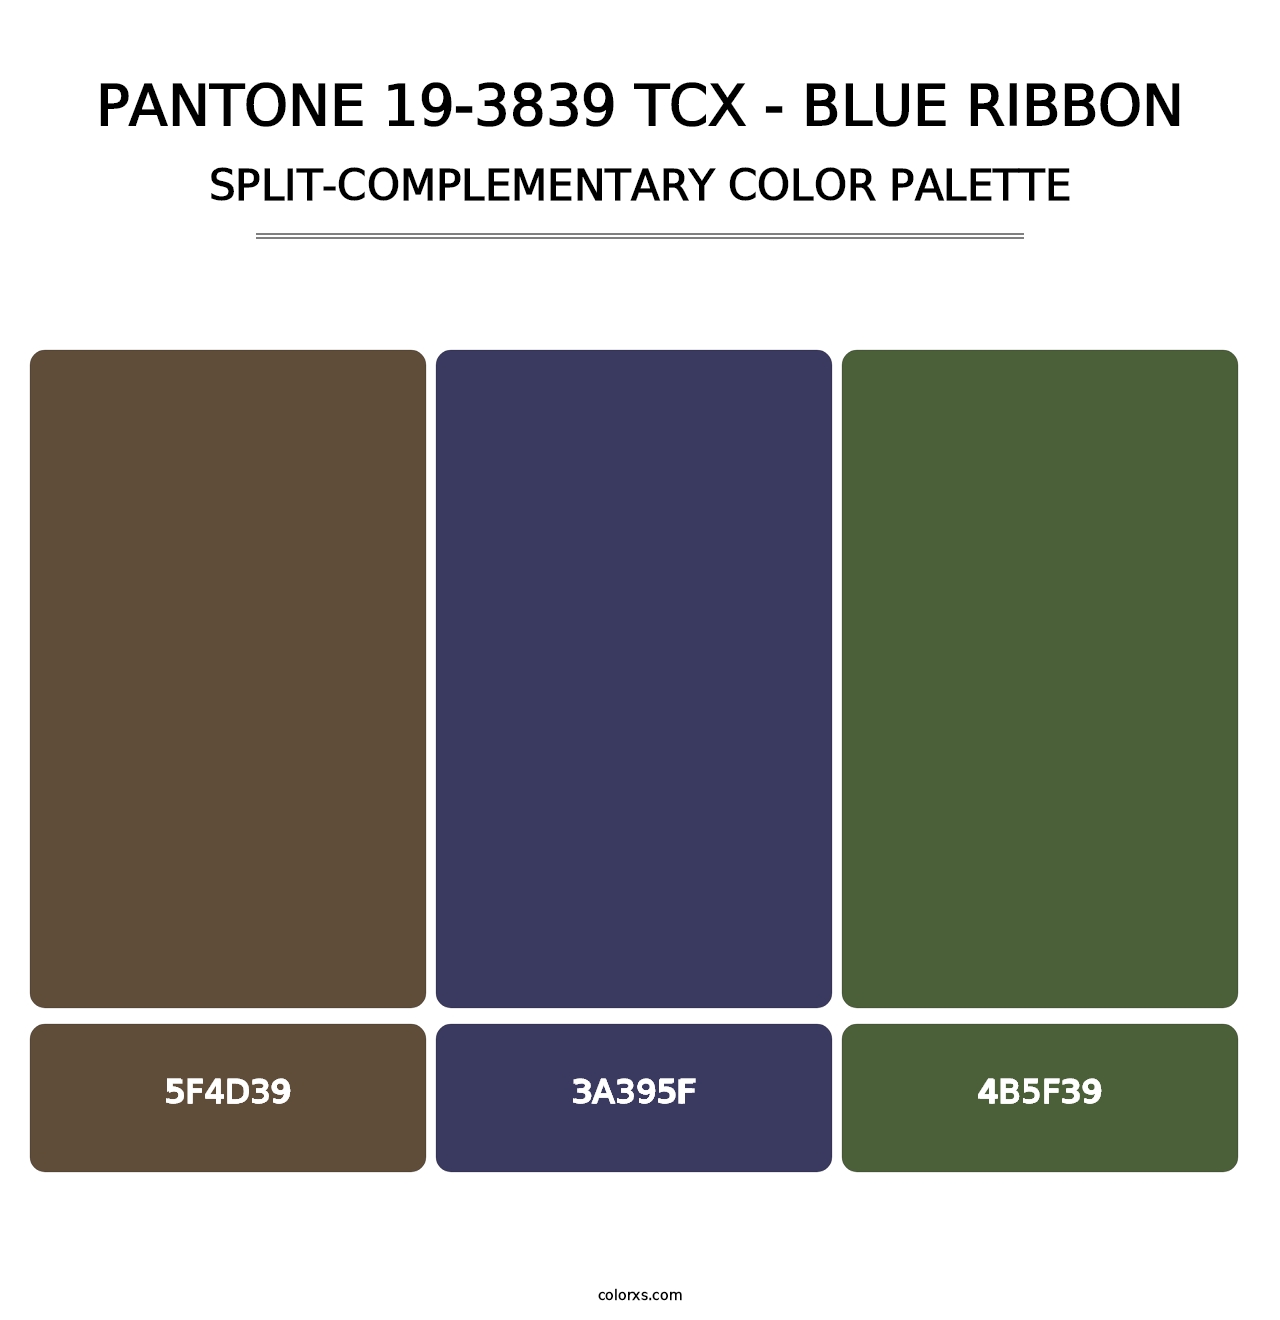 PANTONE 19-3839 TCX - Blue Ribbon - Split-Complementary Color Palette